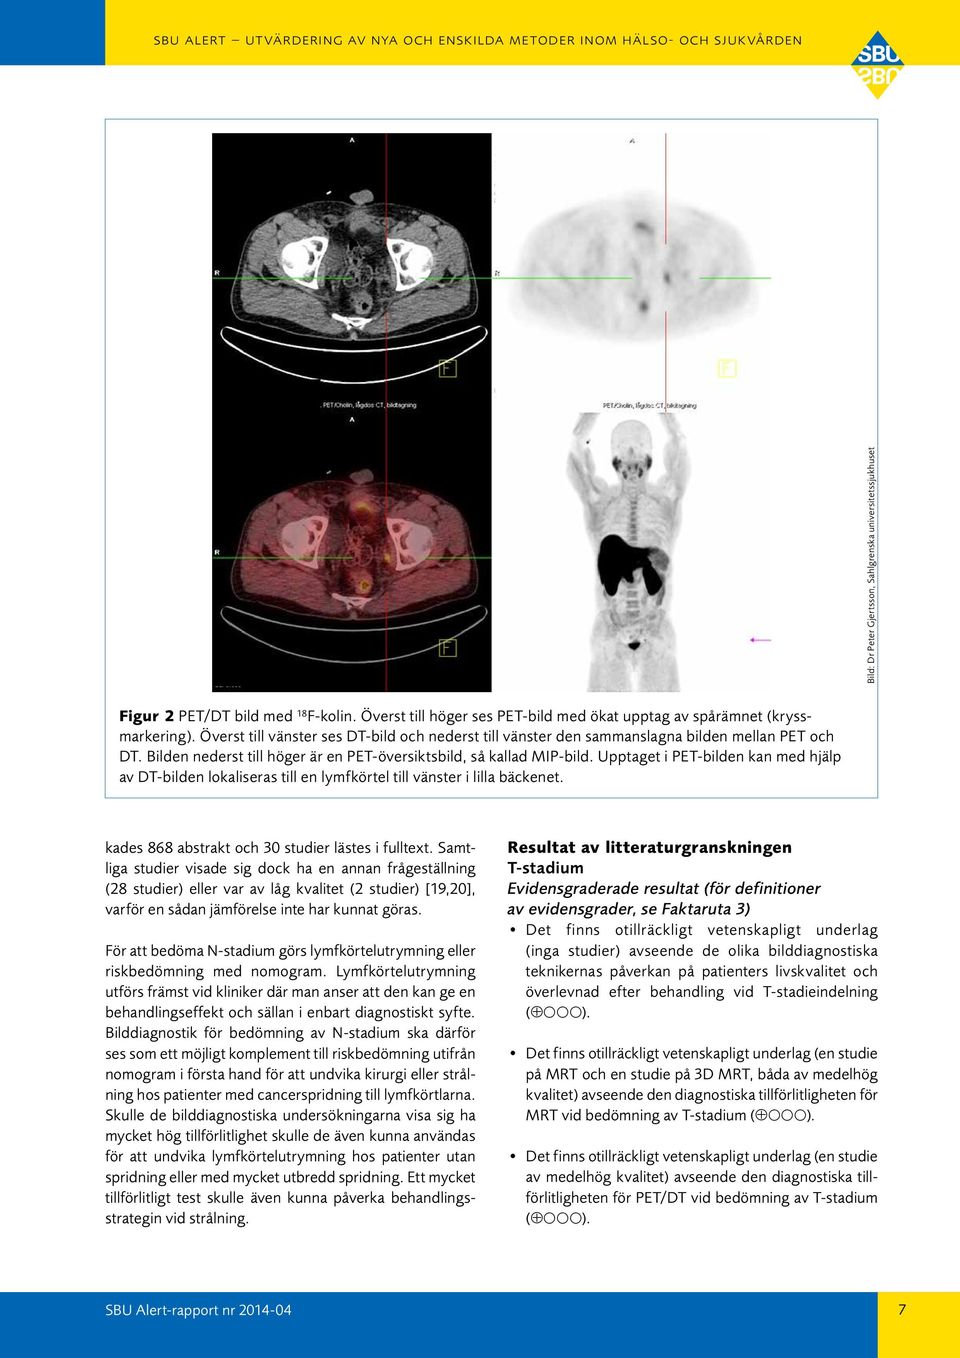 Upptaget i PET-bilden kan med hjälp av DT-bilden lokaliseras till en lymfkörtel till vänster i lilla bäckenet. kades 868 abstrakt och 30 studier lästes i fulltext.